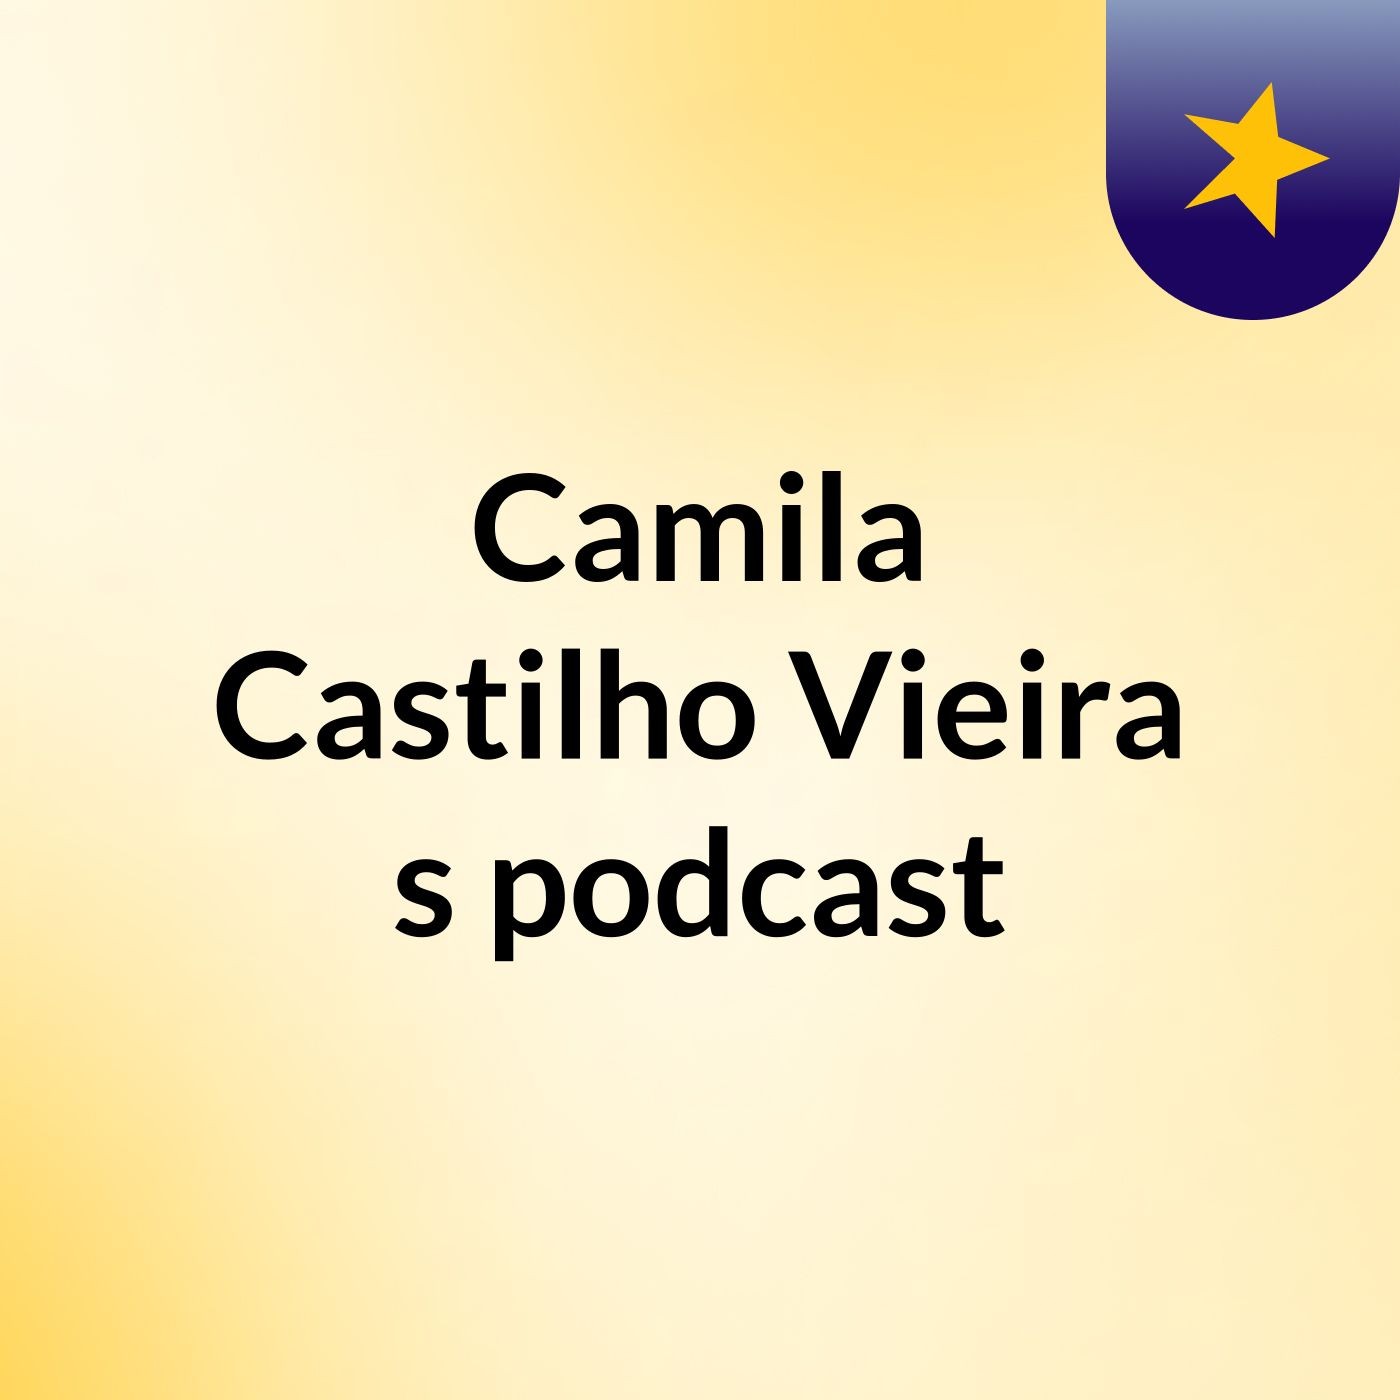 Camila Castilho Vieira's podcast